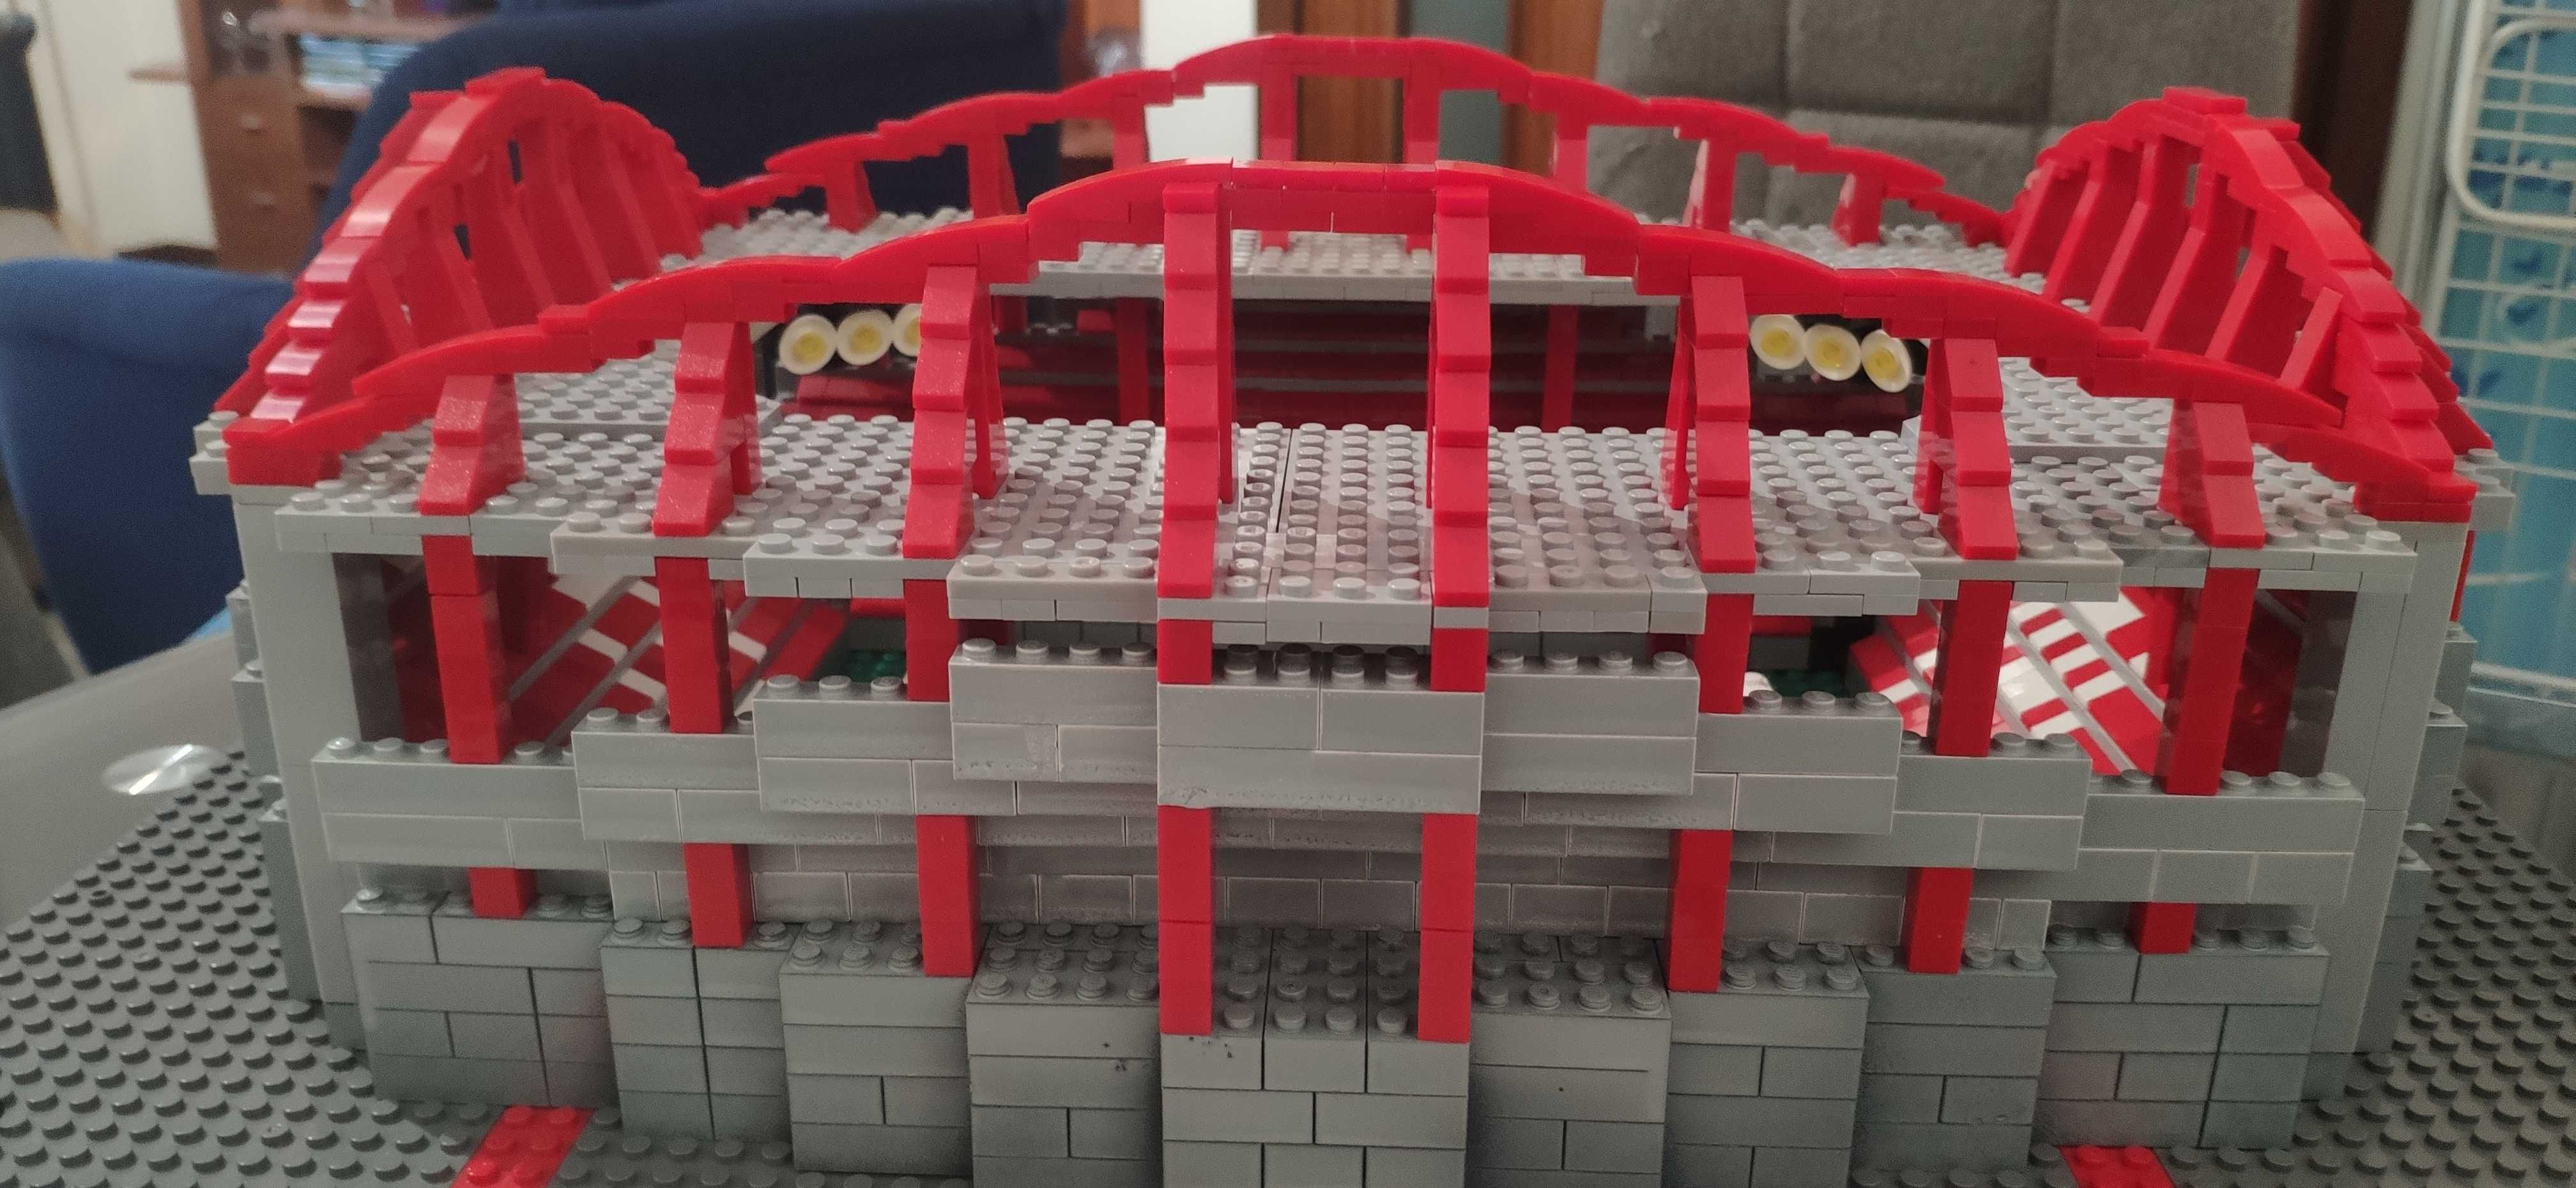 Estádio da Luz Lego